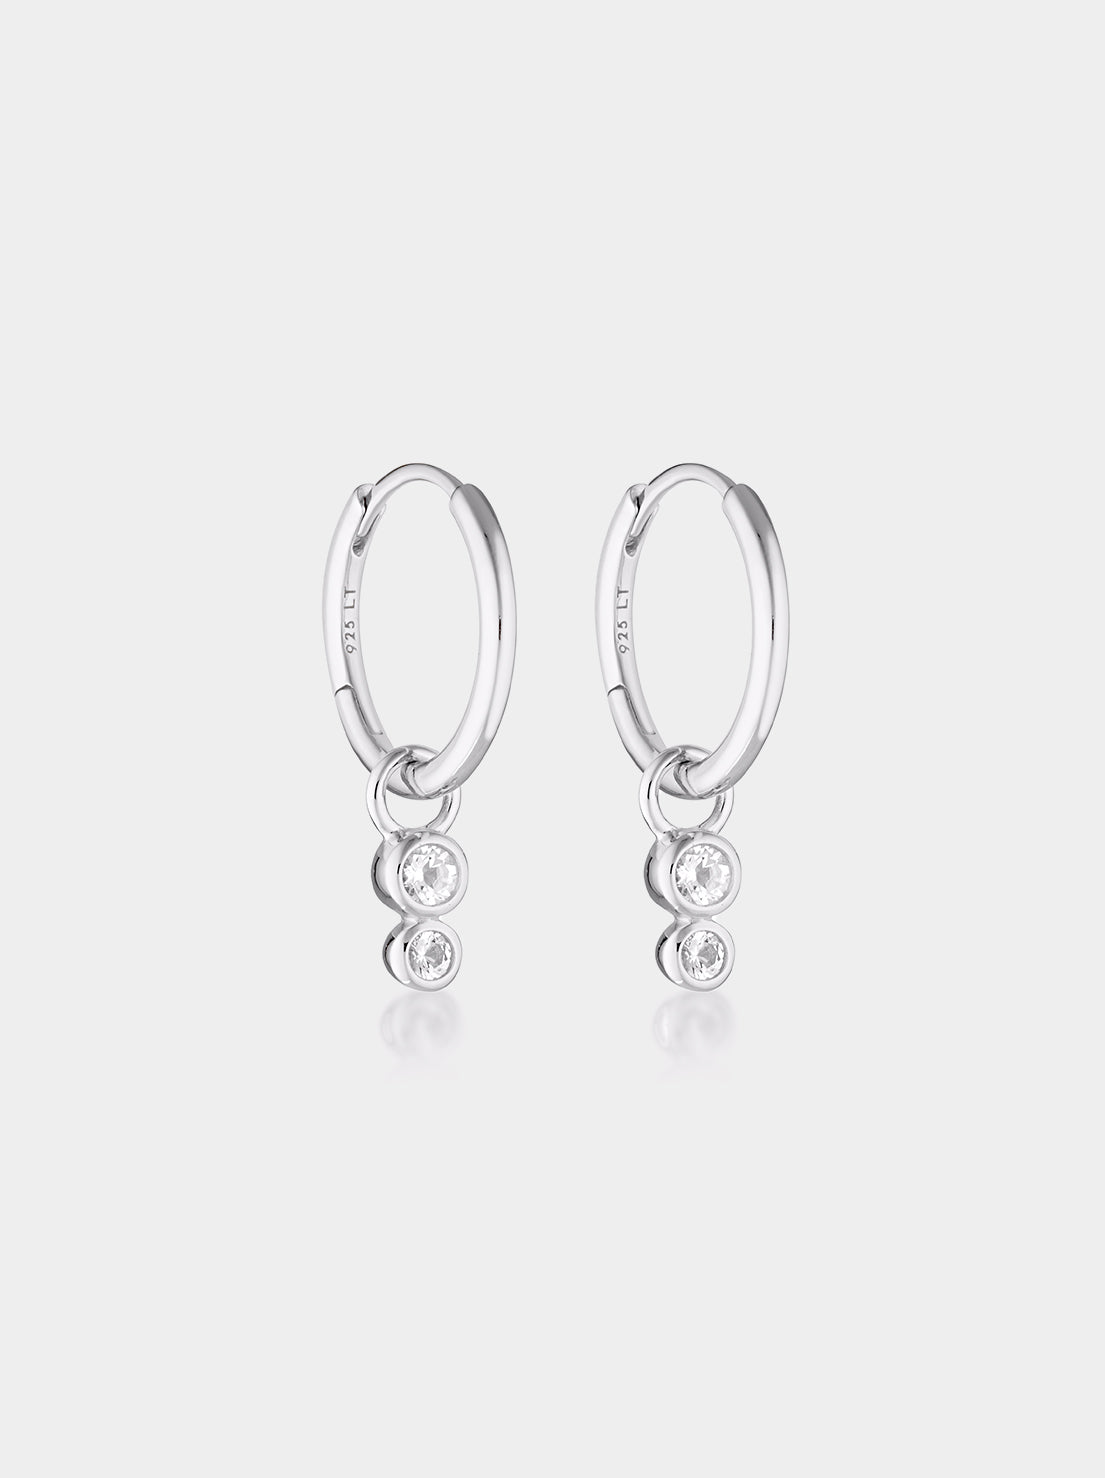 Linda Tahija - Duo Huggie Hoop Earrings - Sterling Silver - White Topaz